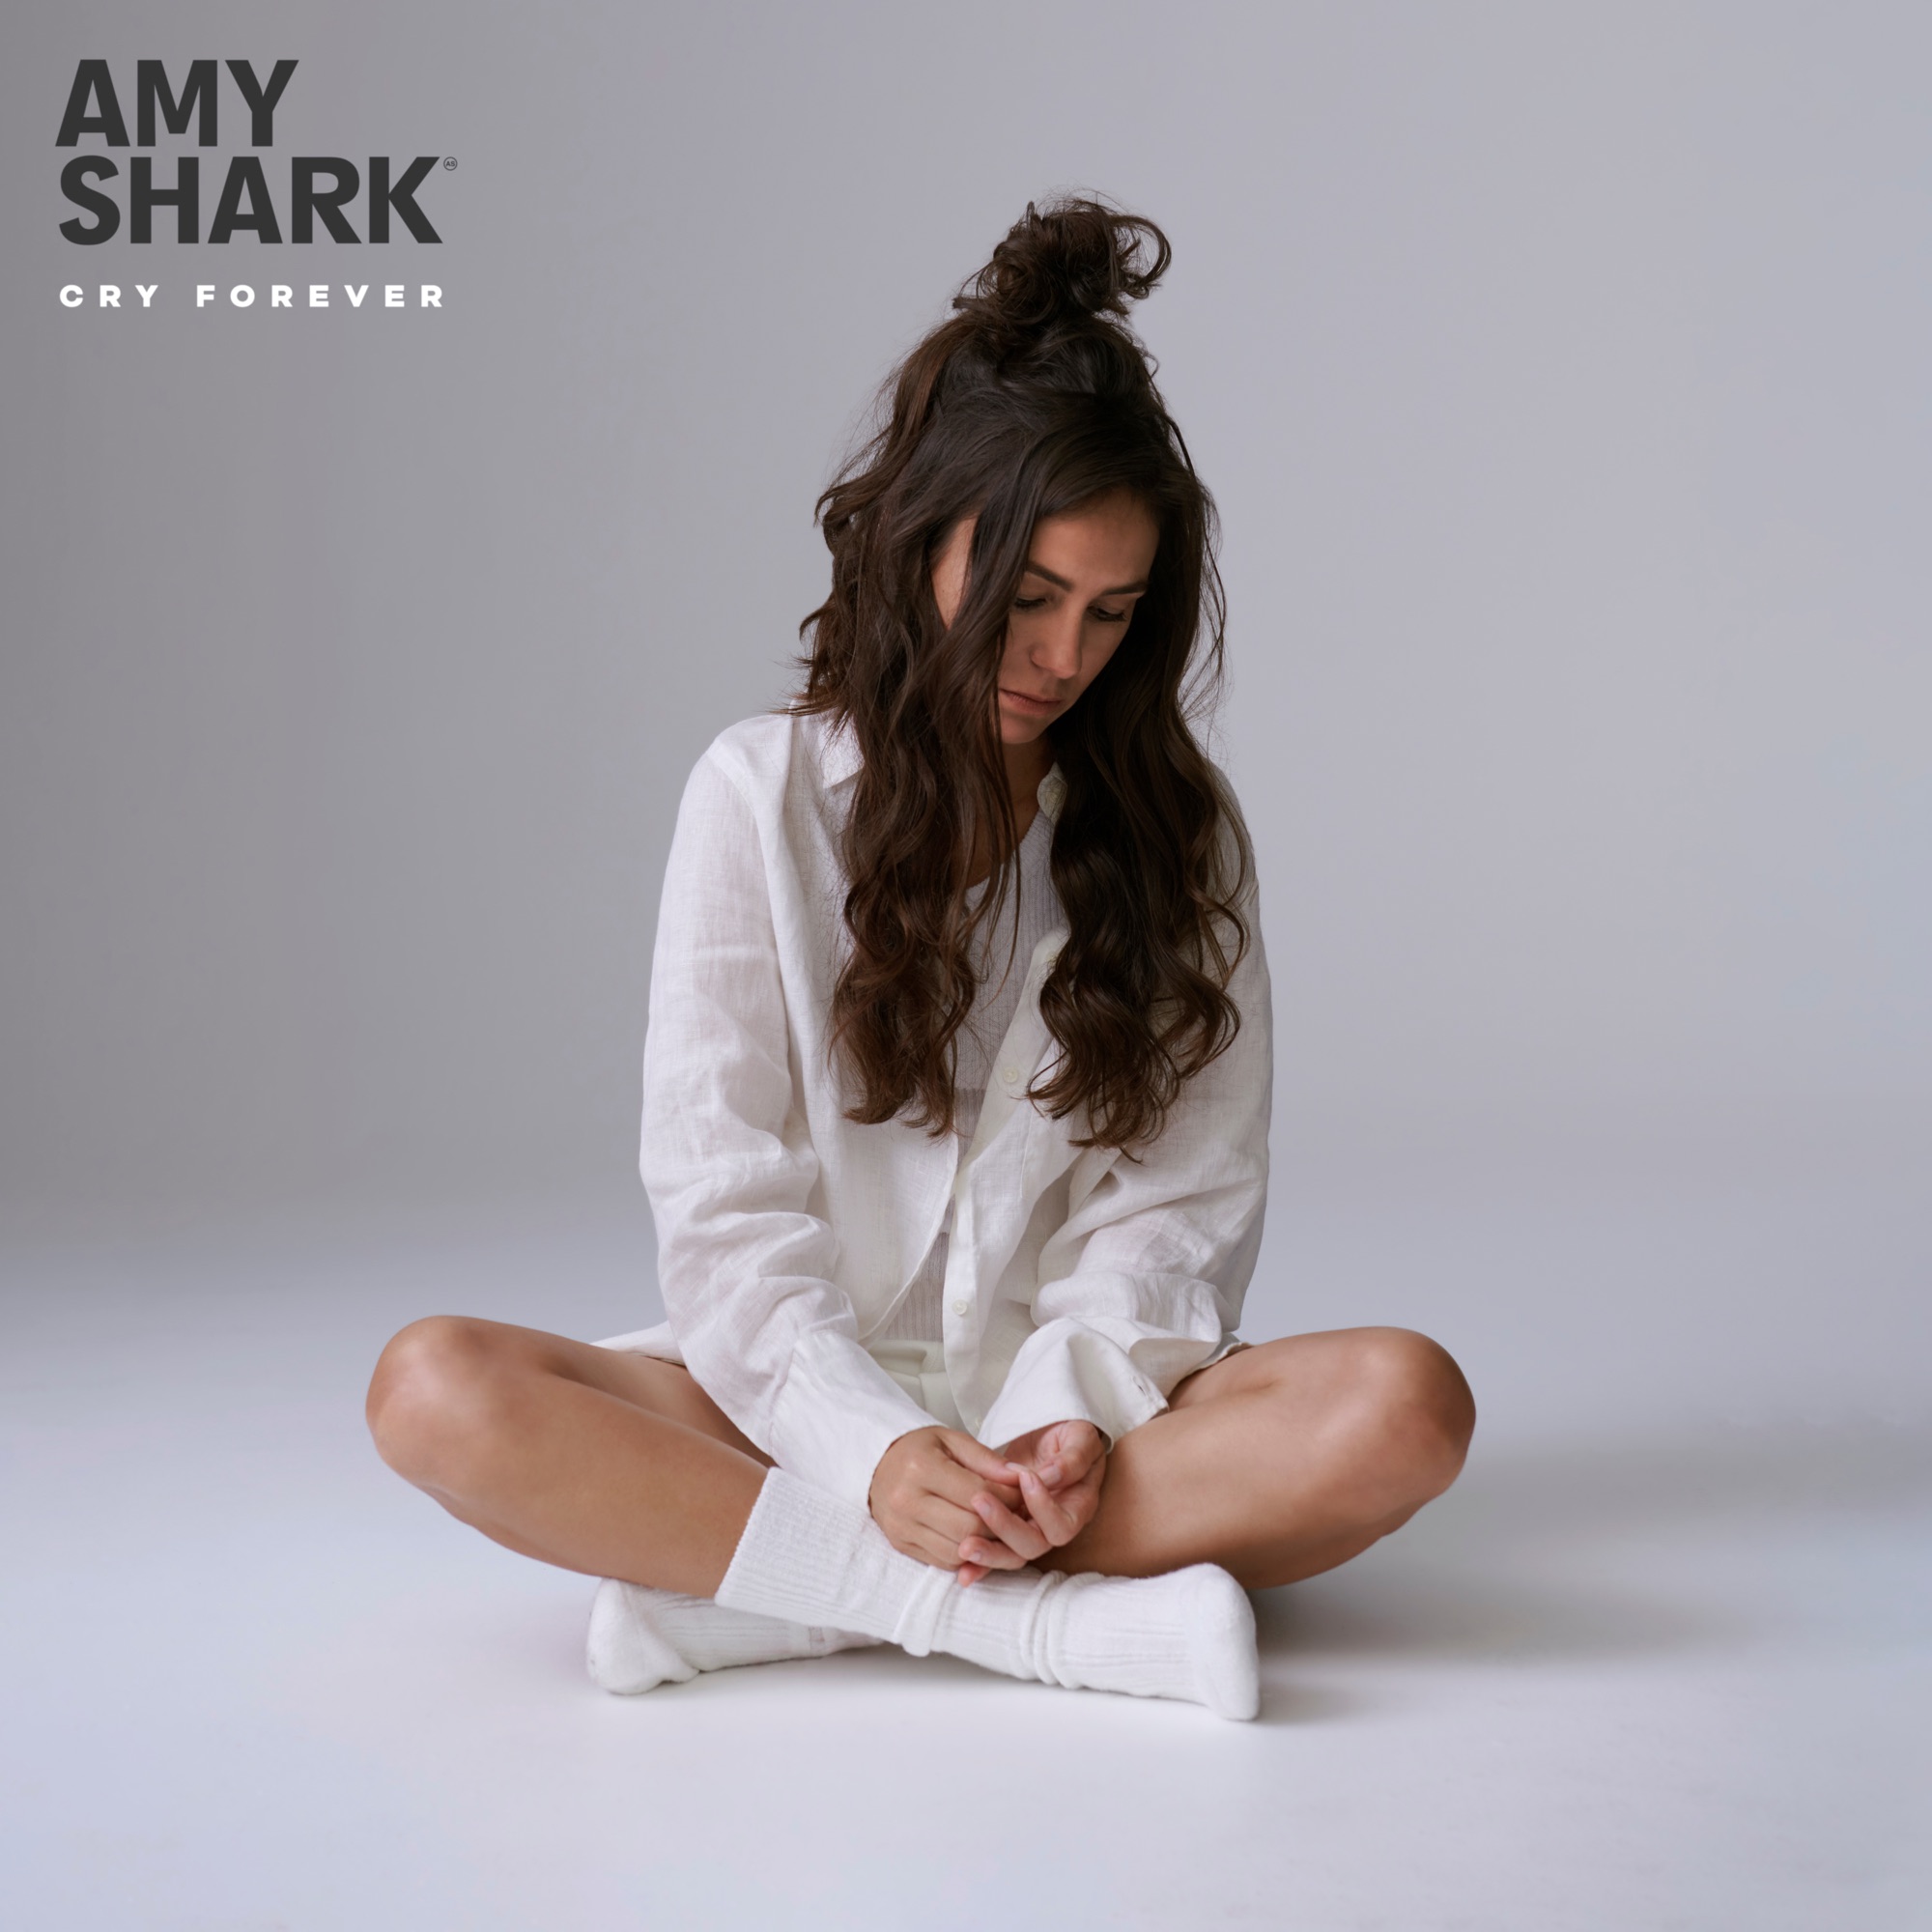 Amy Shark - Amy Shark - Single